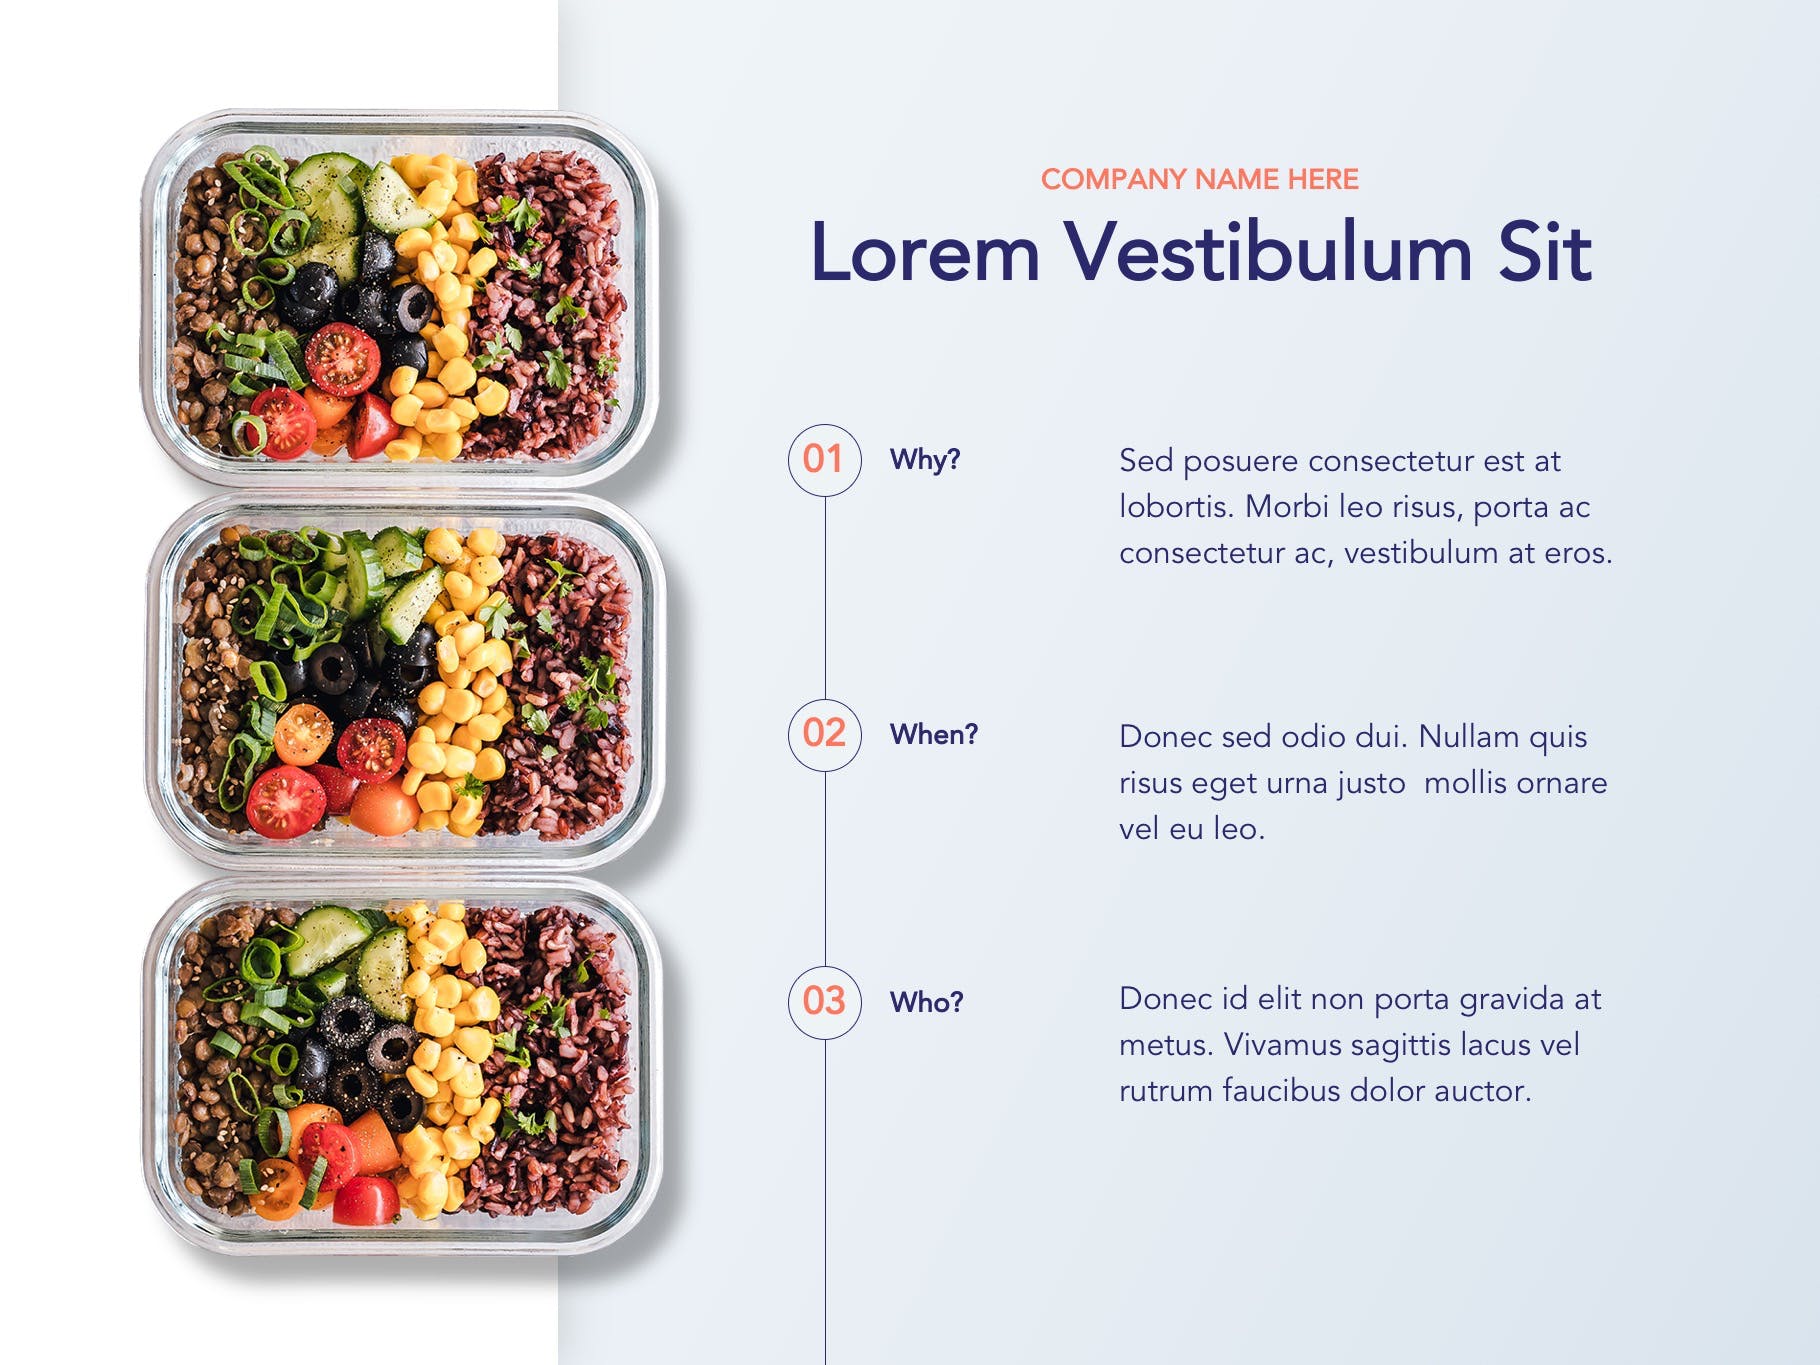 营养配餐食谱谷歌幻灯片设计模板 Nutritious Google Slides Template插图(3)